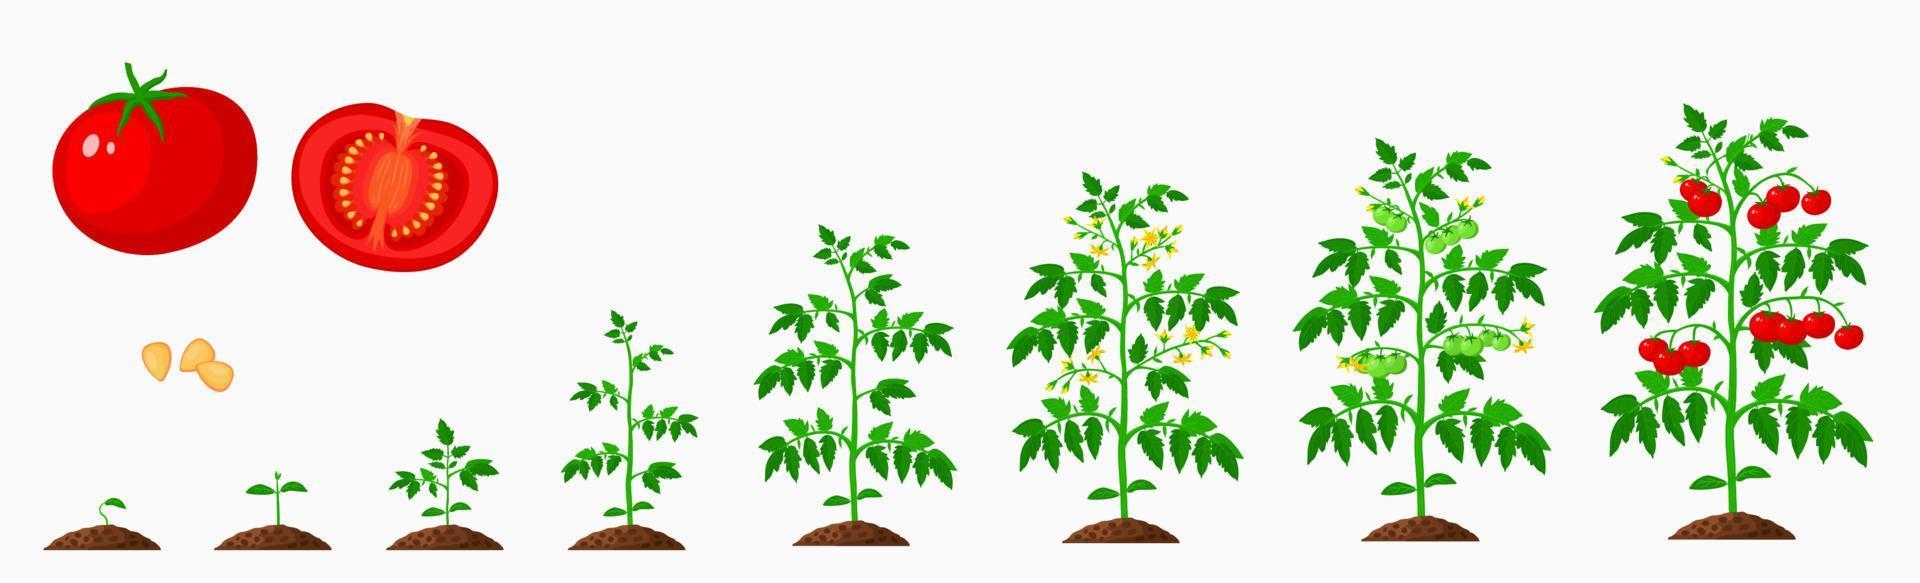 tomate croissance étapes, légume plante la vie cycle vecteur